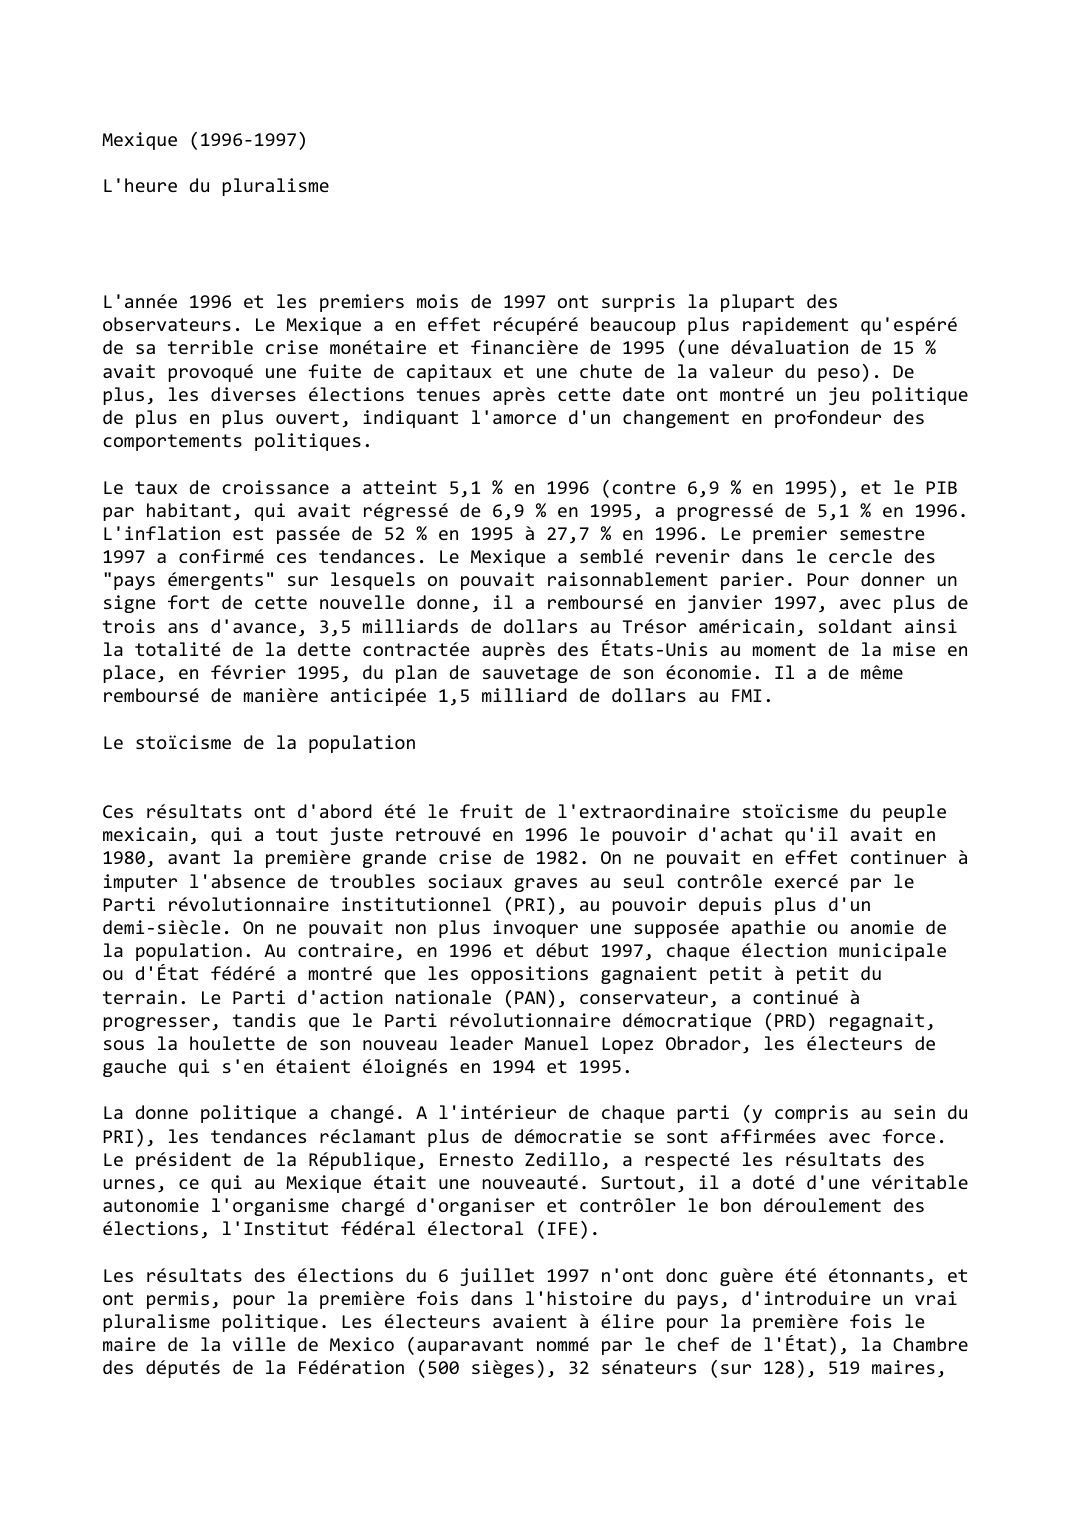 Prévisualisation du document Mexique (1996-1997)

L'heure du pluralisme